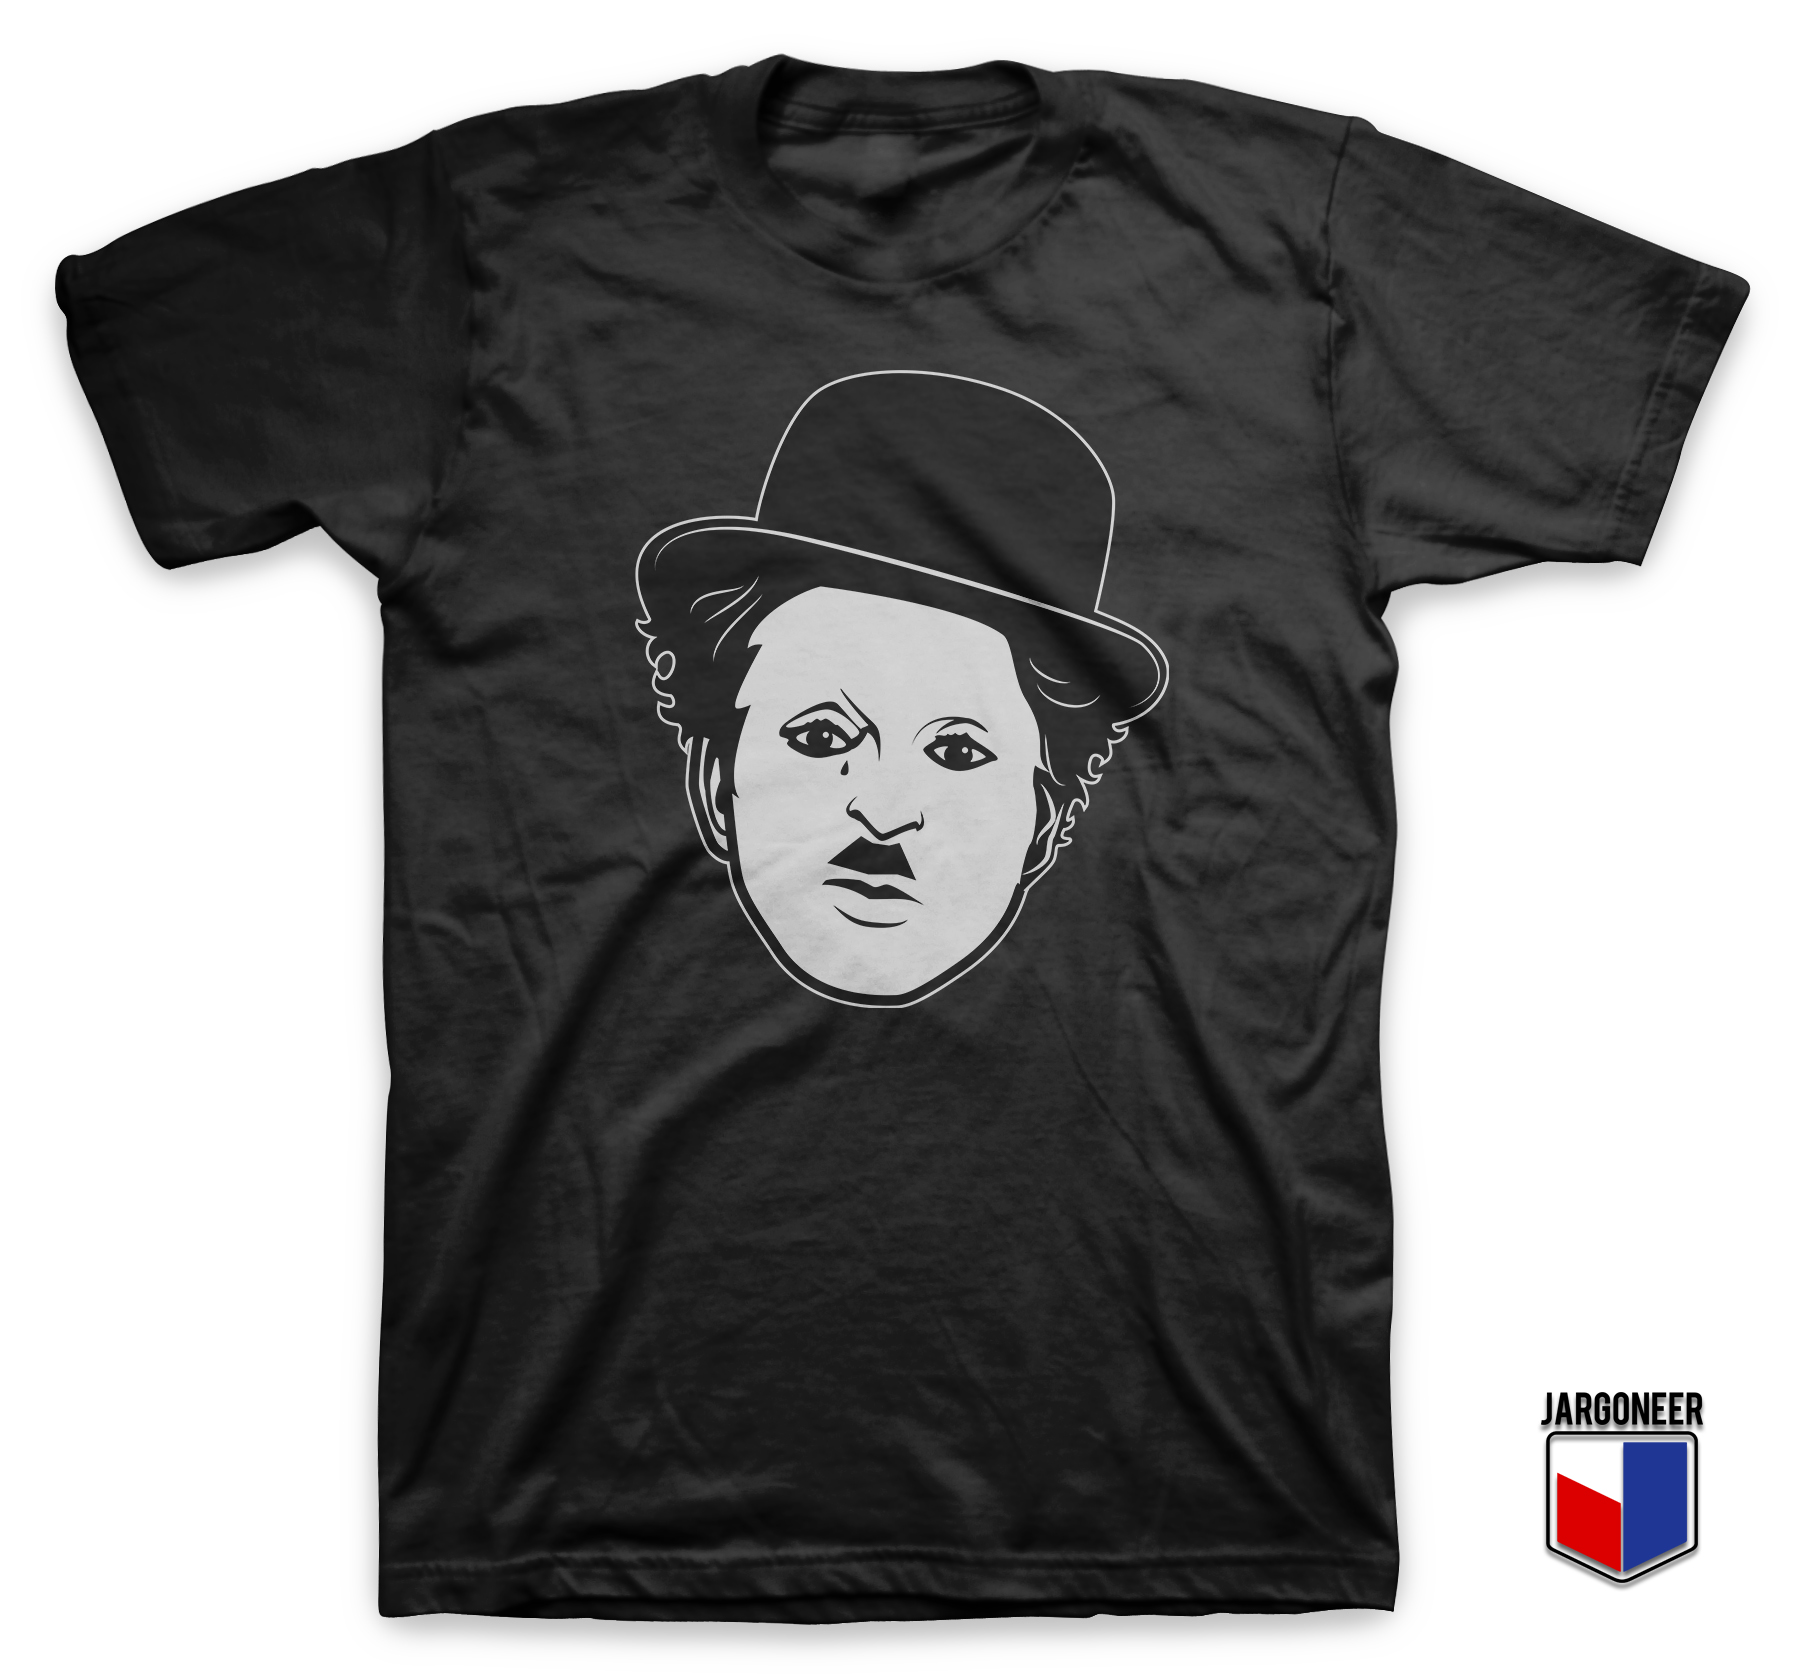 Charlie Chaplin T-Shirt | T-Shirt Ideas | Shirt Designs jargoneer.com